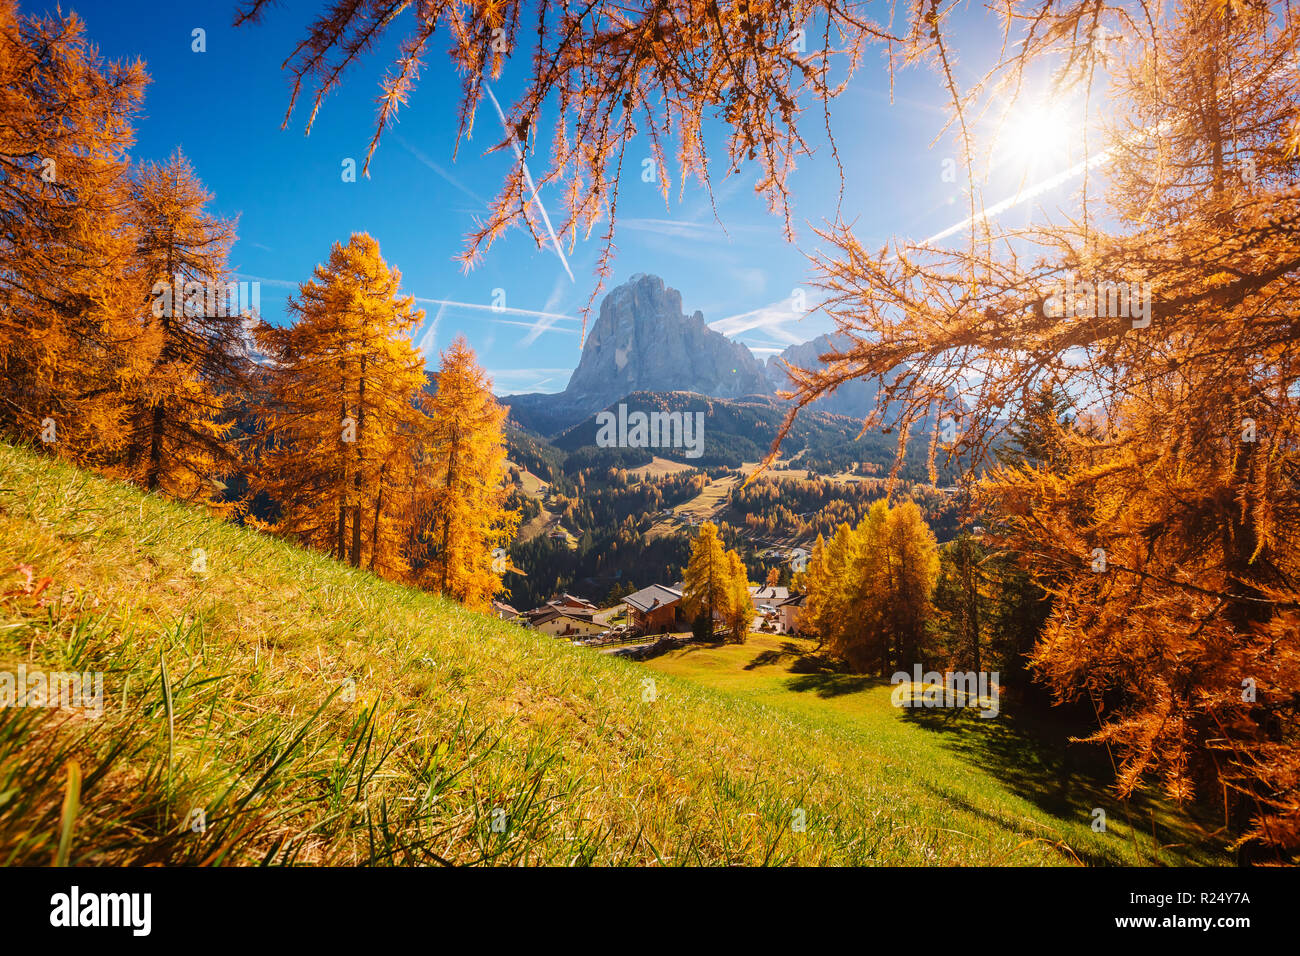 Herrliche Herbst Landschaft in Gröden. Lage Nationalpark der Dolomiten,  Trentino Alto Adige, Provinz Bozen, Südtirol, Italien, Europa  Stockfotografie - Alamy